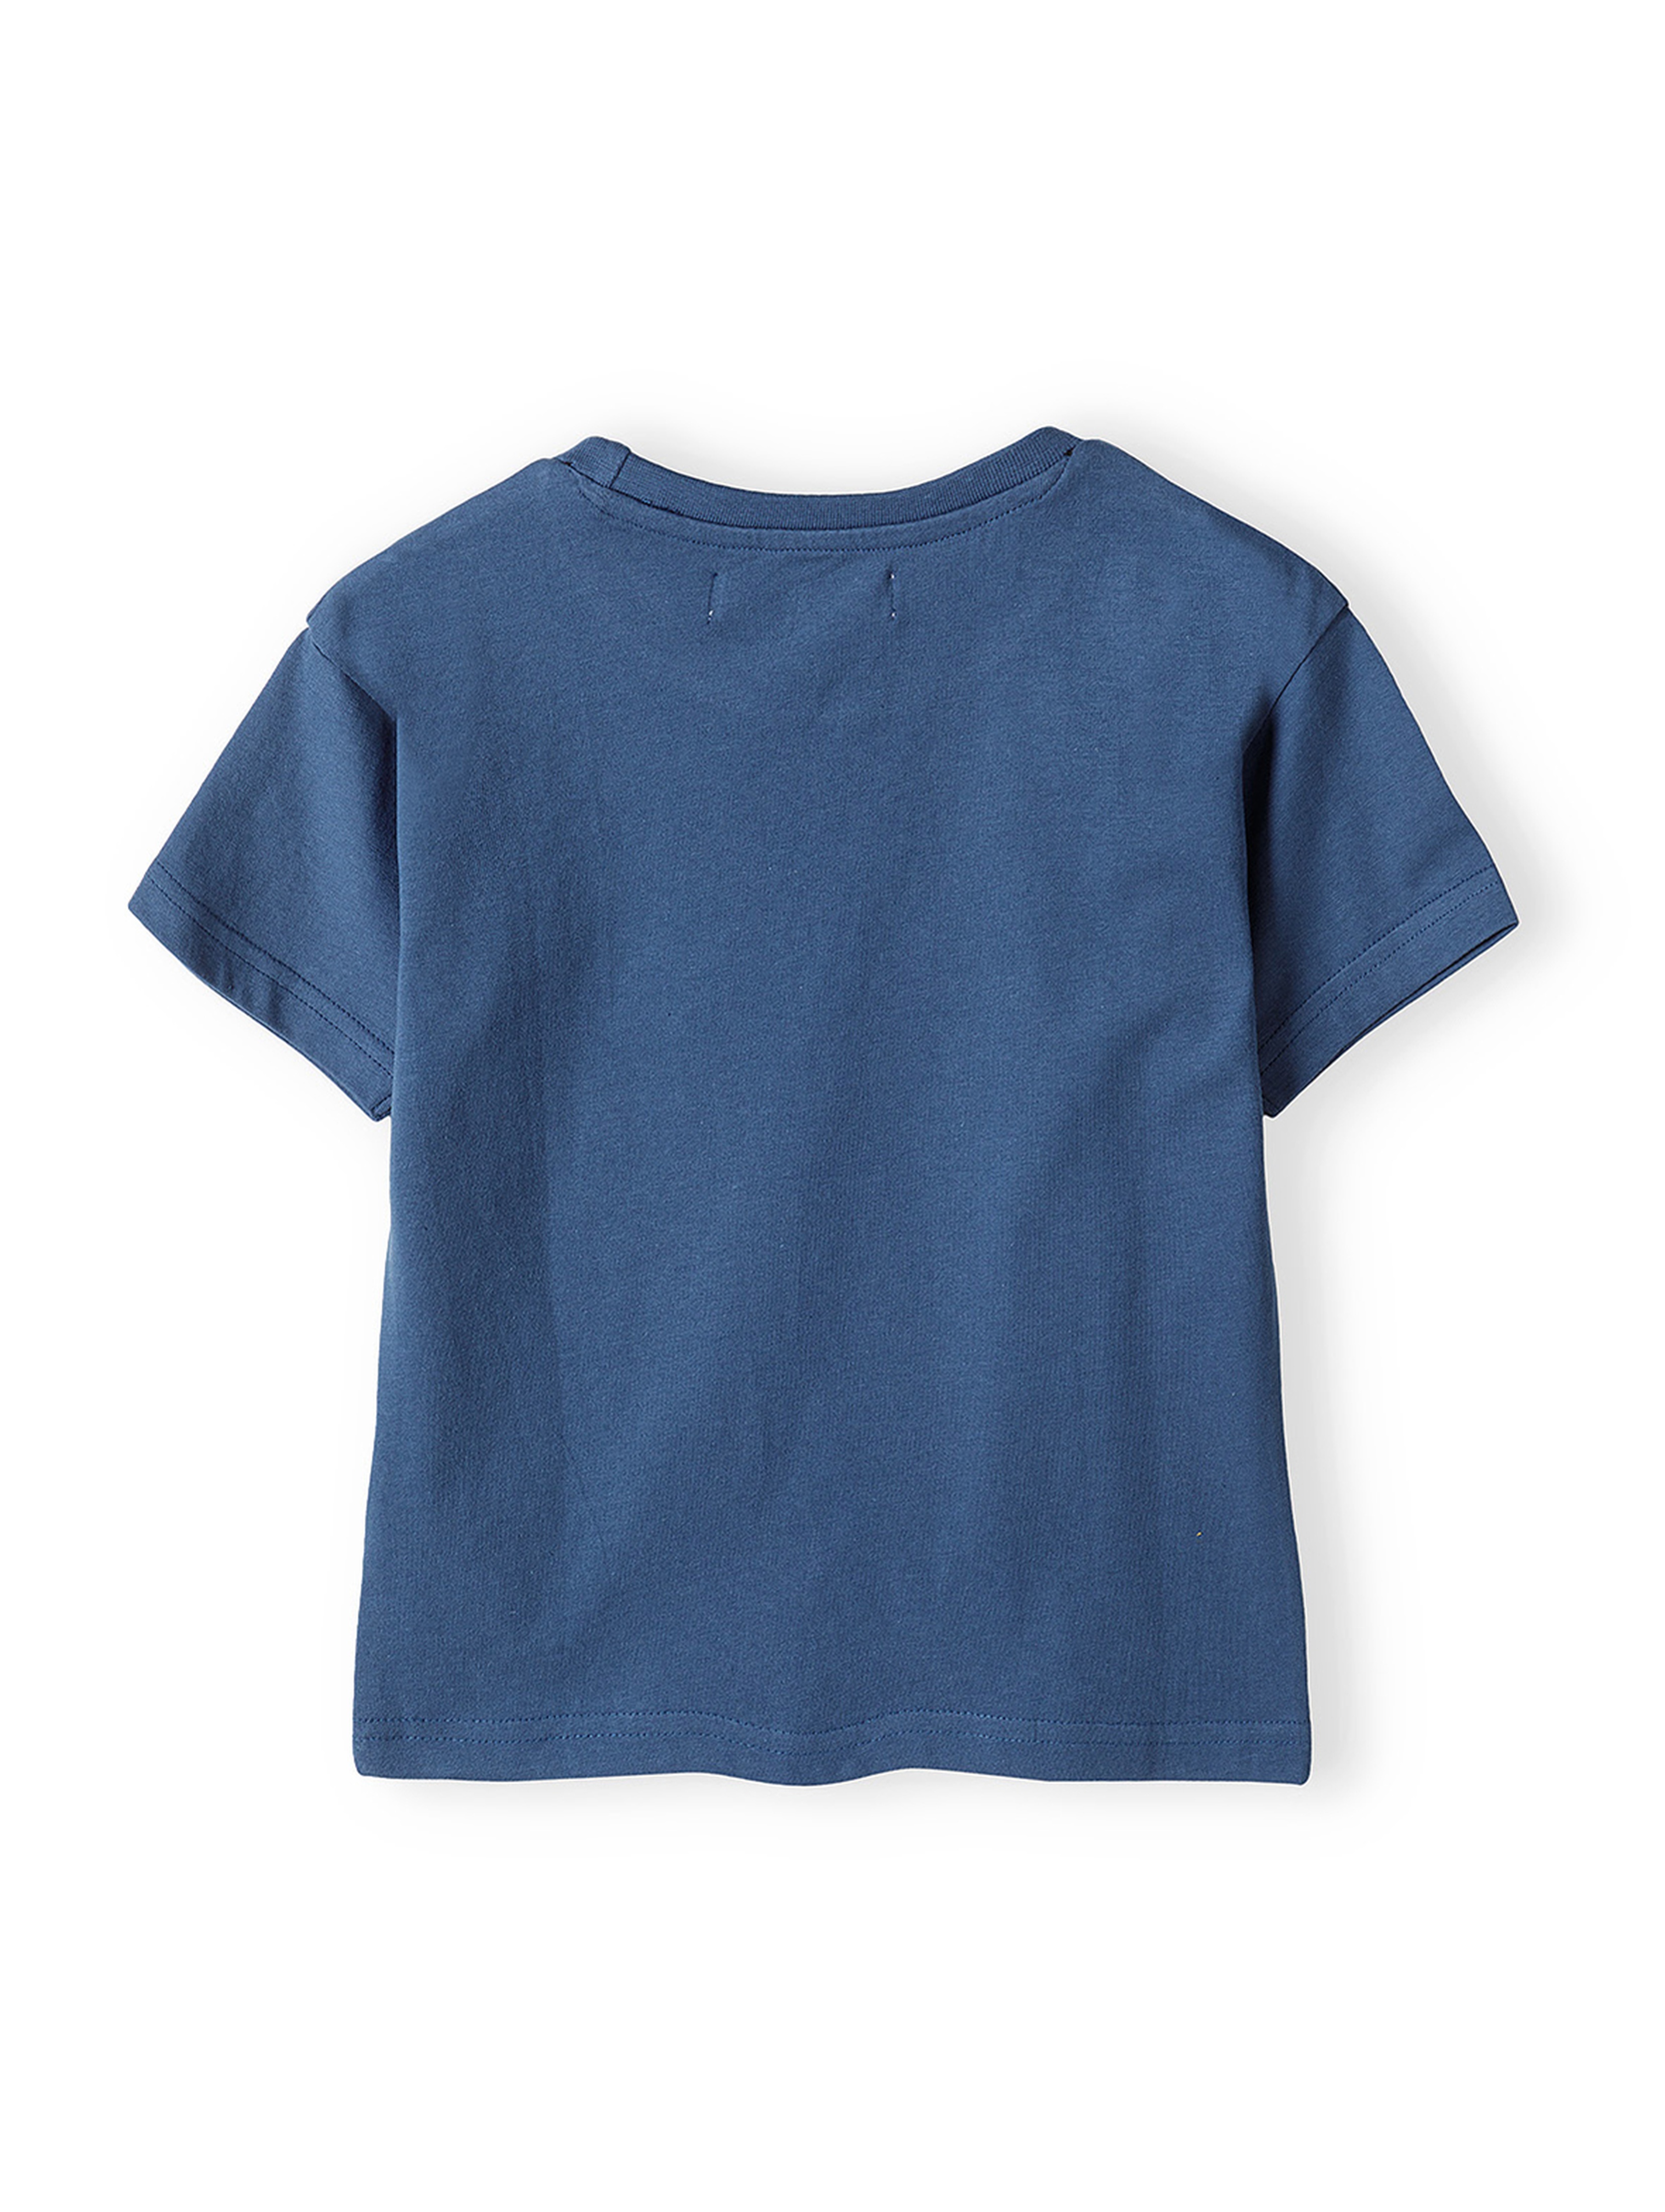 Niebieski t-shirt bawełniany dla chłopca z nadrukiem